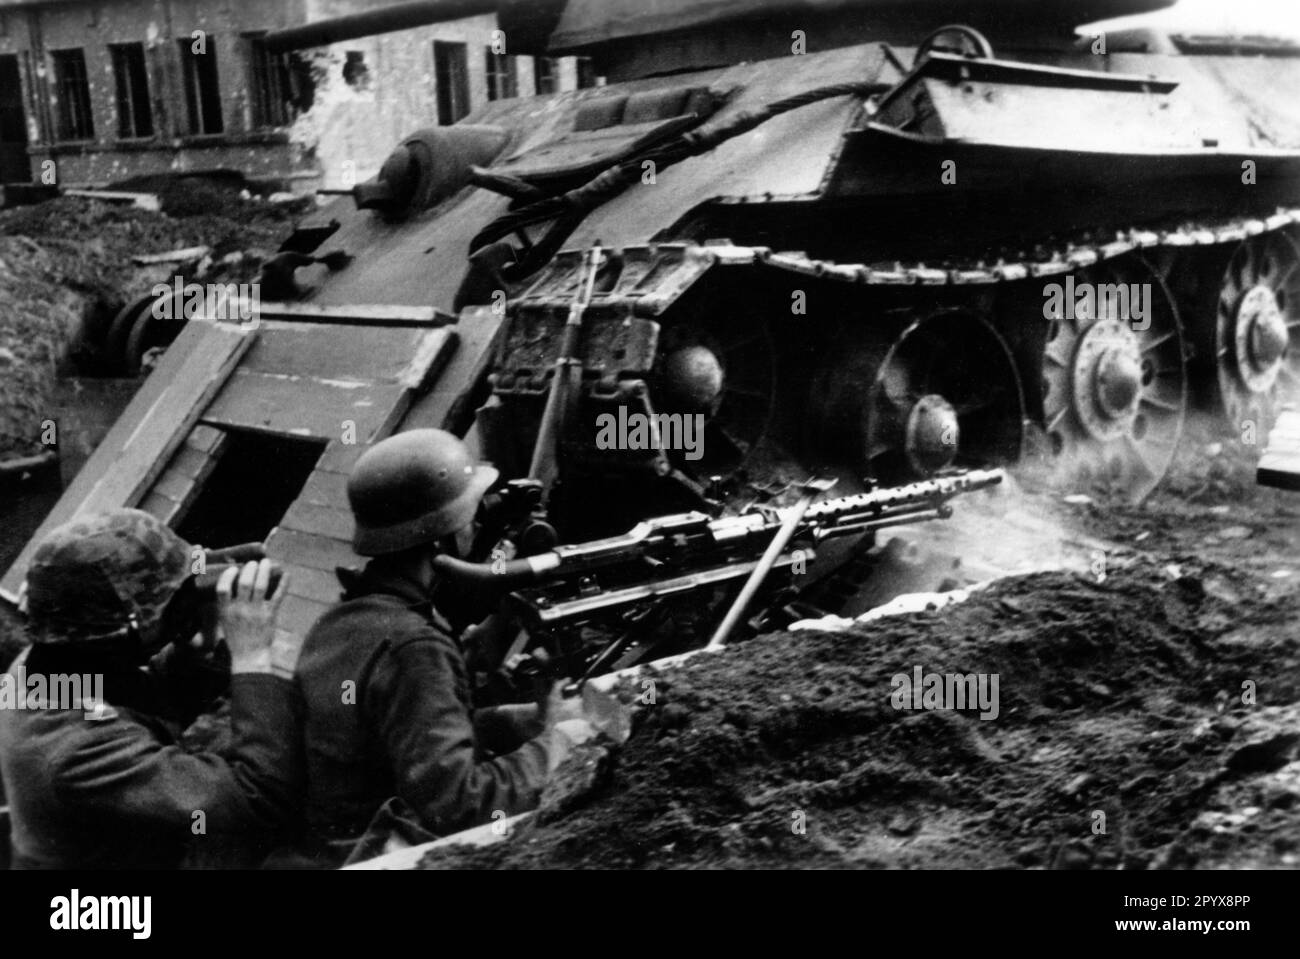 Deutsche Soldaten mit Maschinengewehr MG 34 in Stellung in Voronezh. Sie errichteten einen Unterschlupf unter der heruntergekommenen T34. Foto: Müller-Schwannecke [maschinelle Übersetzung] Stockfoto